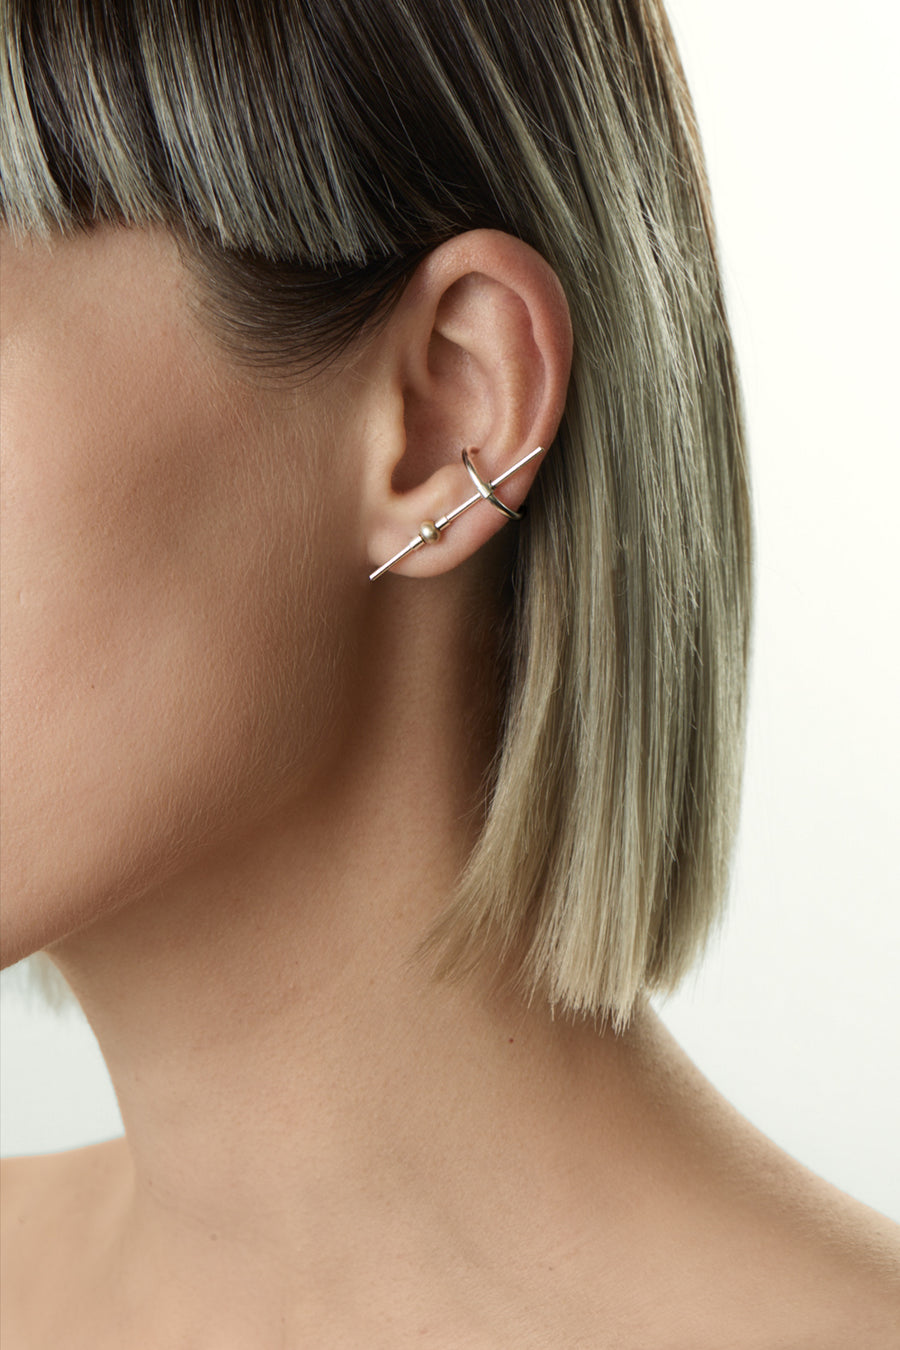 Pearline single earring set